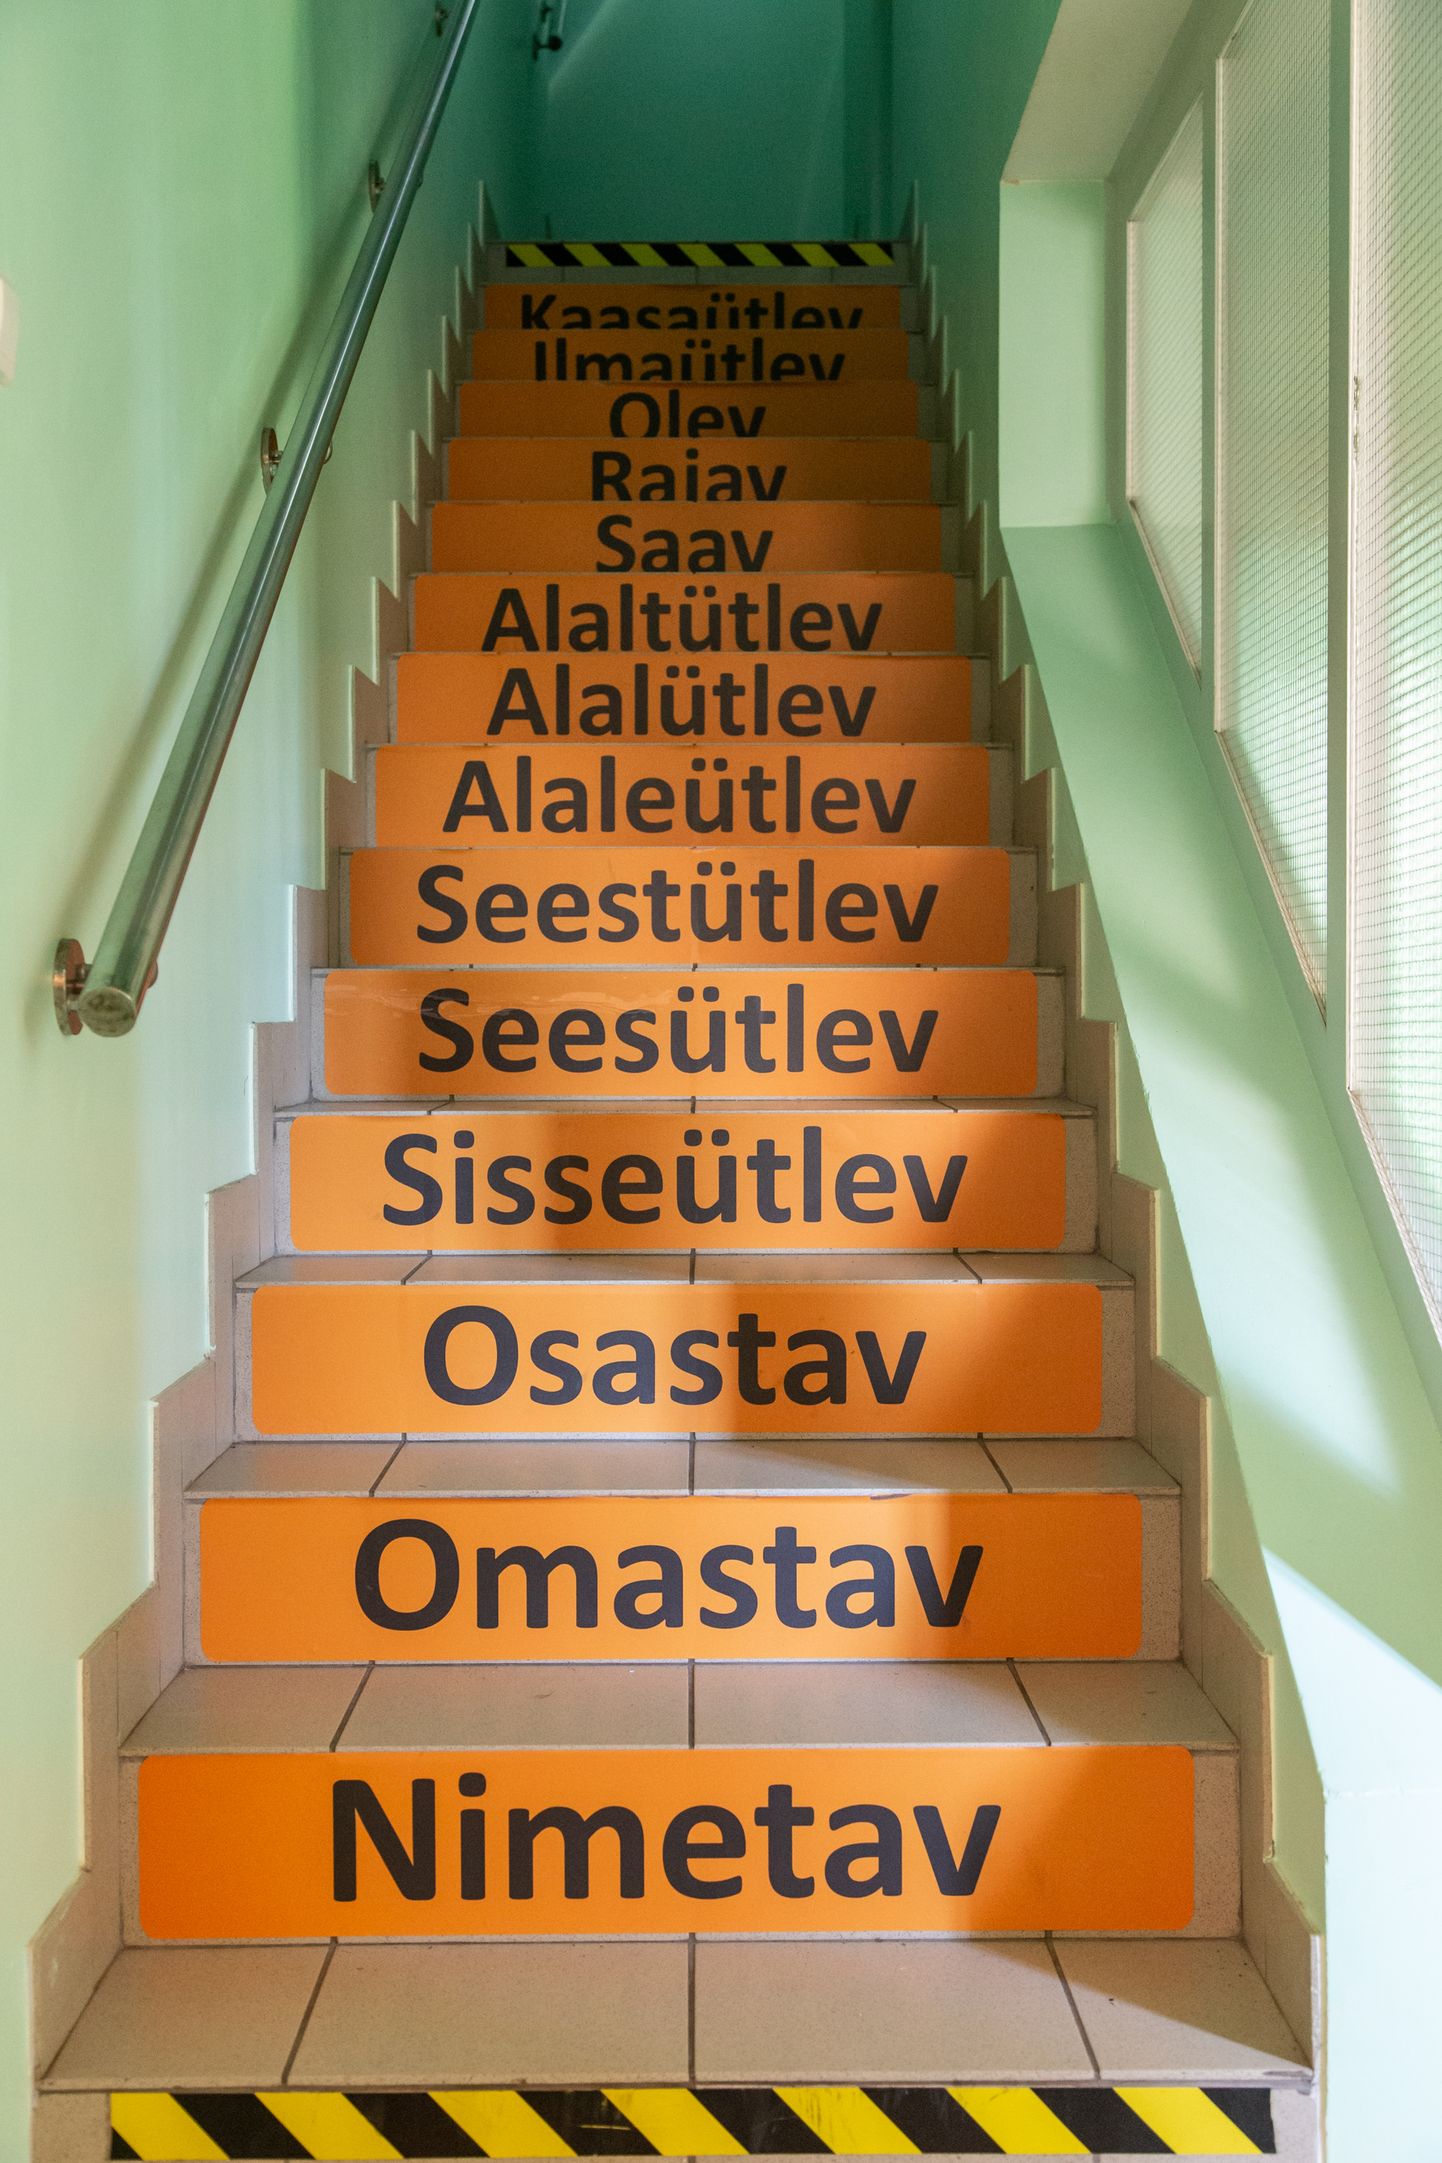 Alates 1. septembrist lähevad kõik venekeelsete koolide 1. ja 4. klassid üle eestikeelsele õppele ning üleminek täielikule eestikeelsele õppele neis põhikoolides peaks toimuma aastal 2030. Pildil on eesti keele õppimist toetav trepp Illuka koolis.